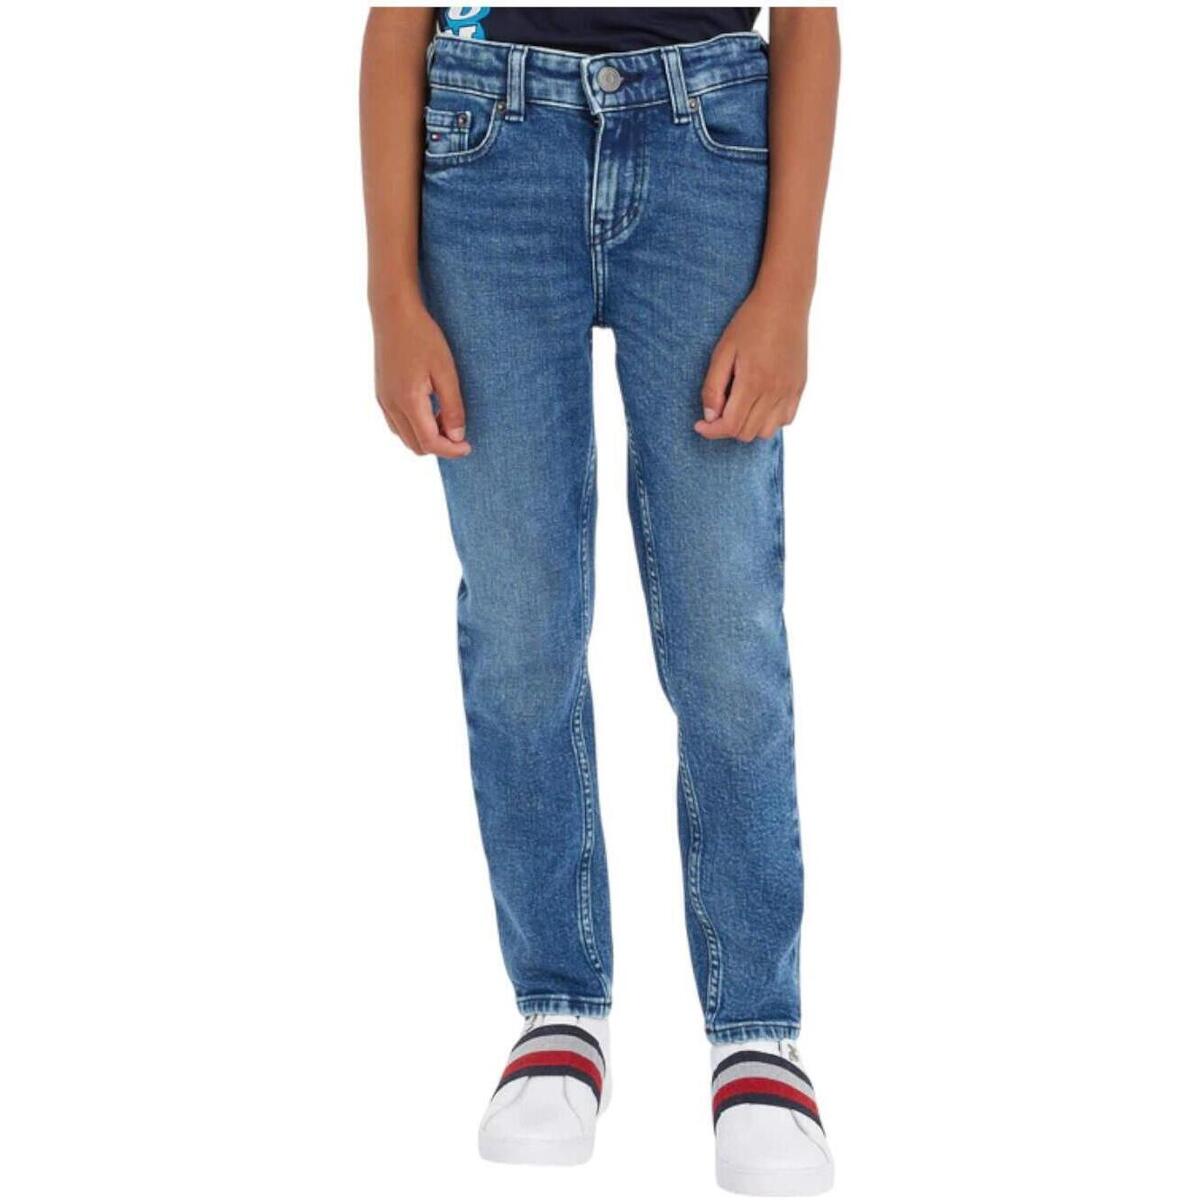 Oblačila Dečki Jeans Tommy Hilfiger  Modra